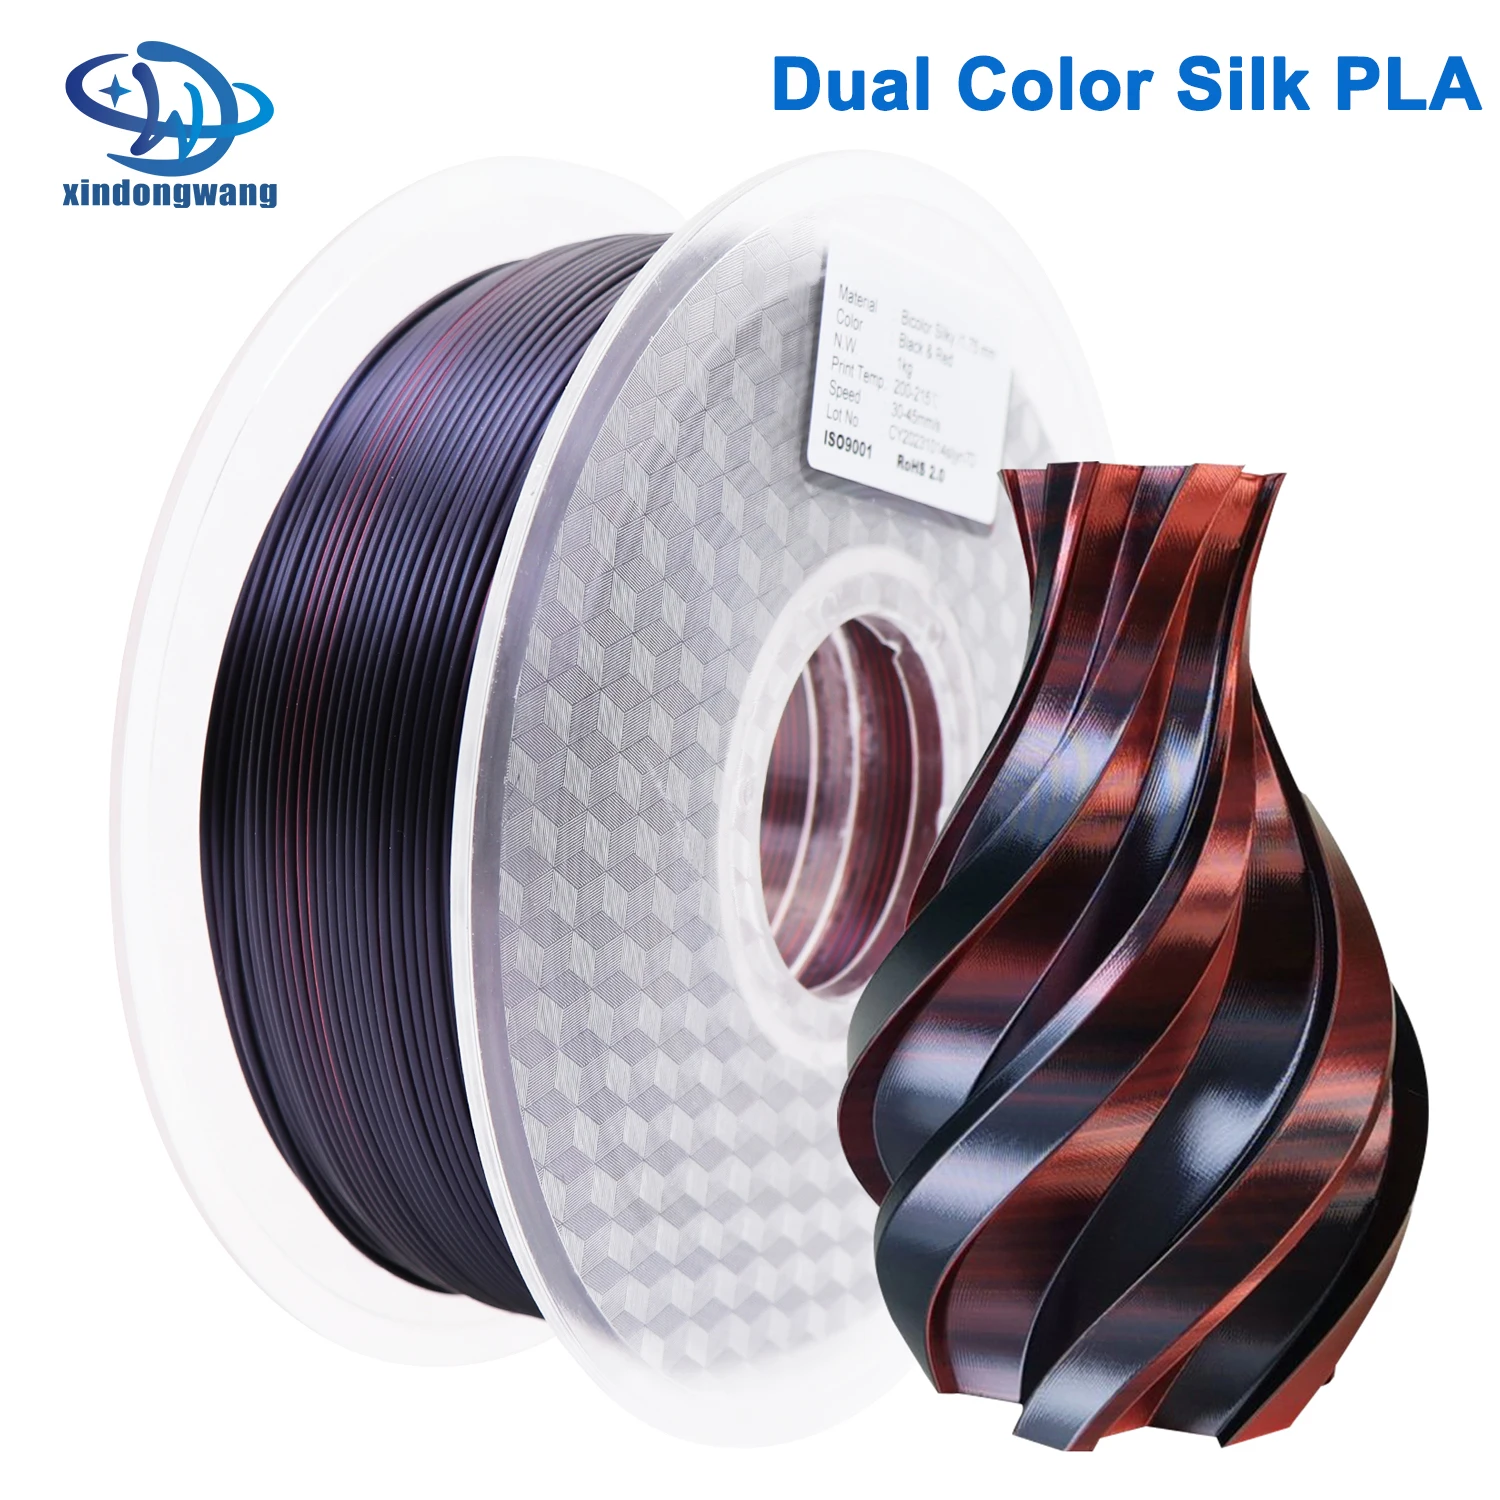 

Новинка двухцветная шелковая нить пла два цвета 1,75 мм 1 кг высококачественный пластик для 3D-принтера FDM